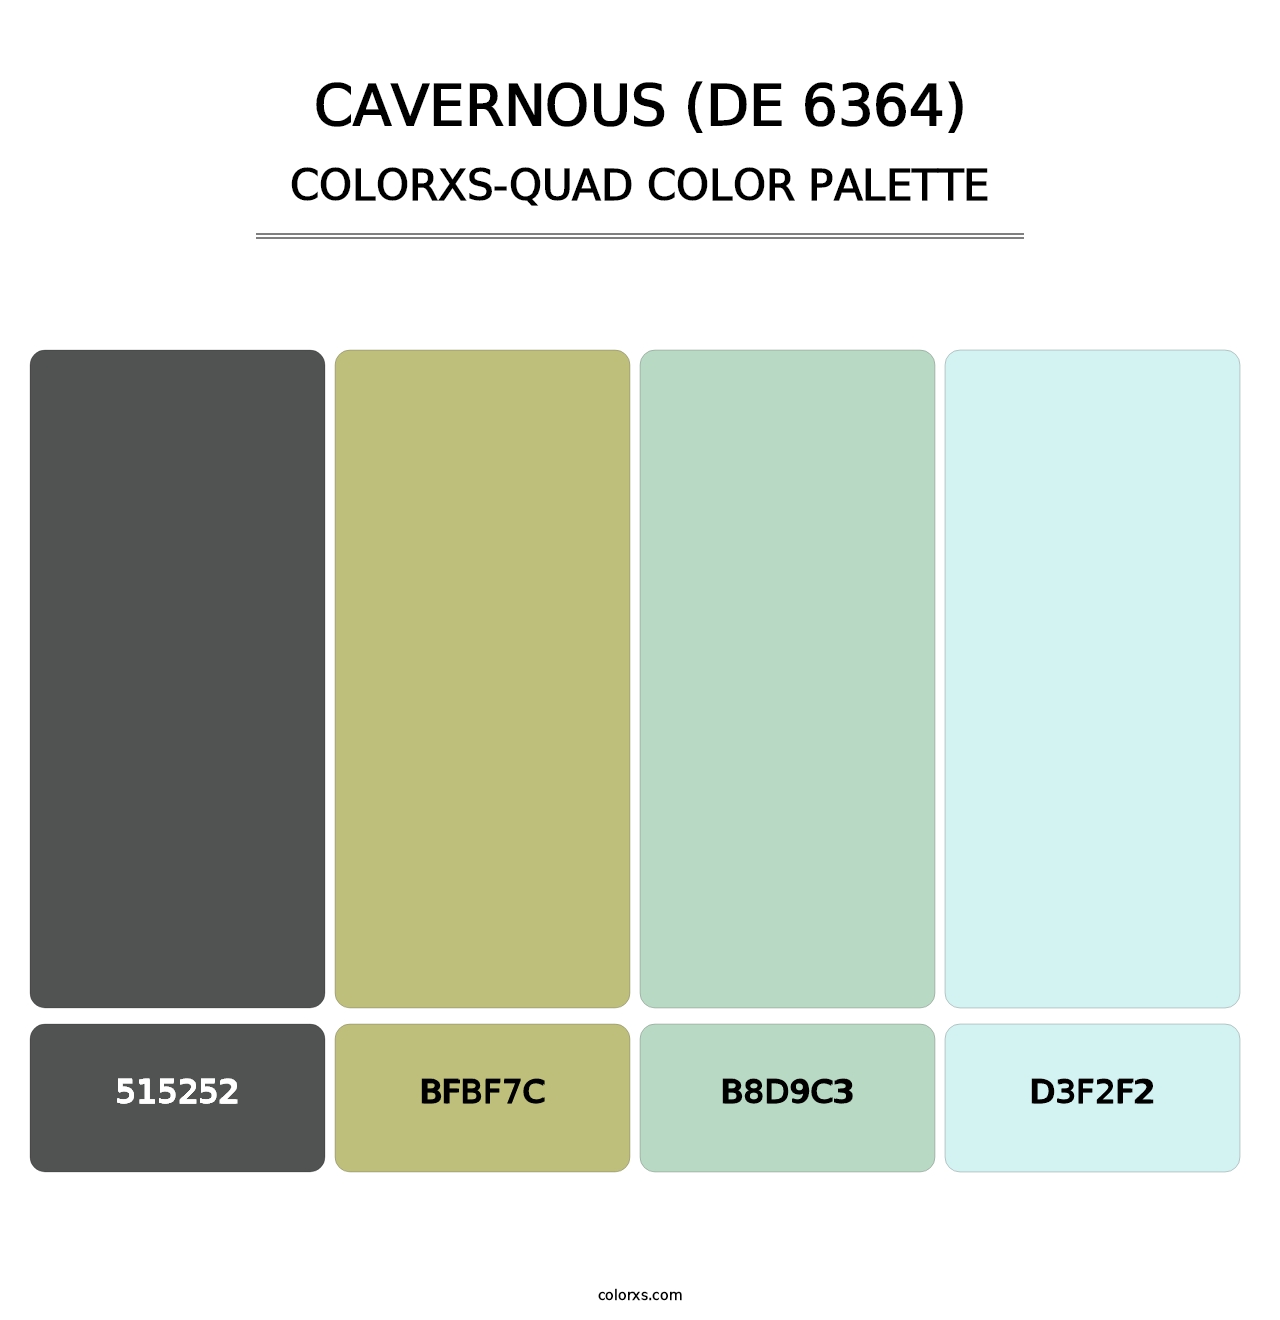 Cavernous (DE 6364) - Colorxs Quad Palette